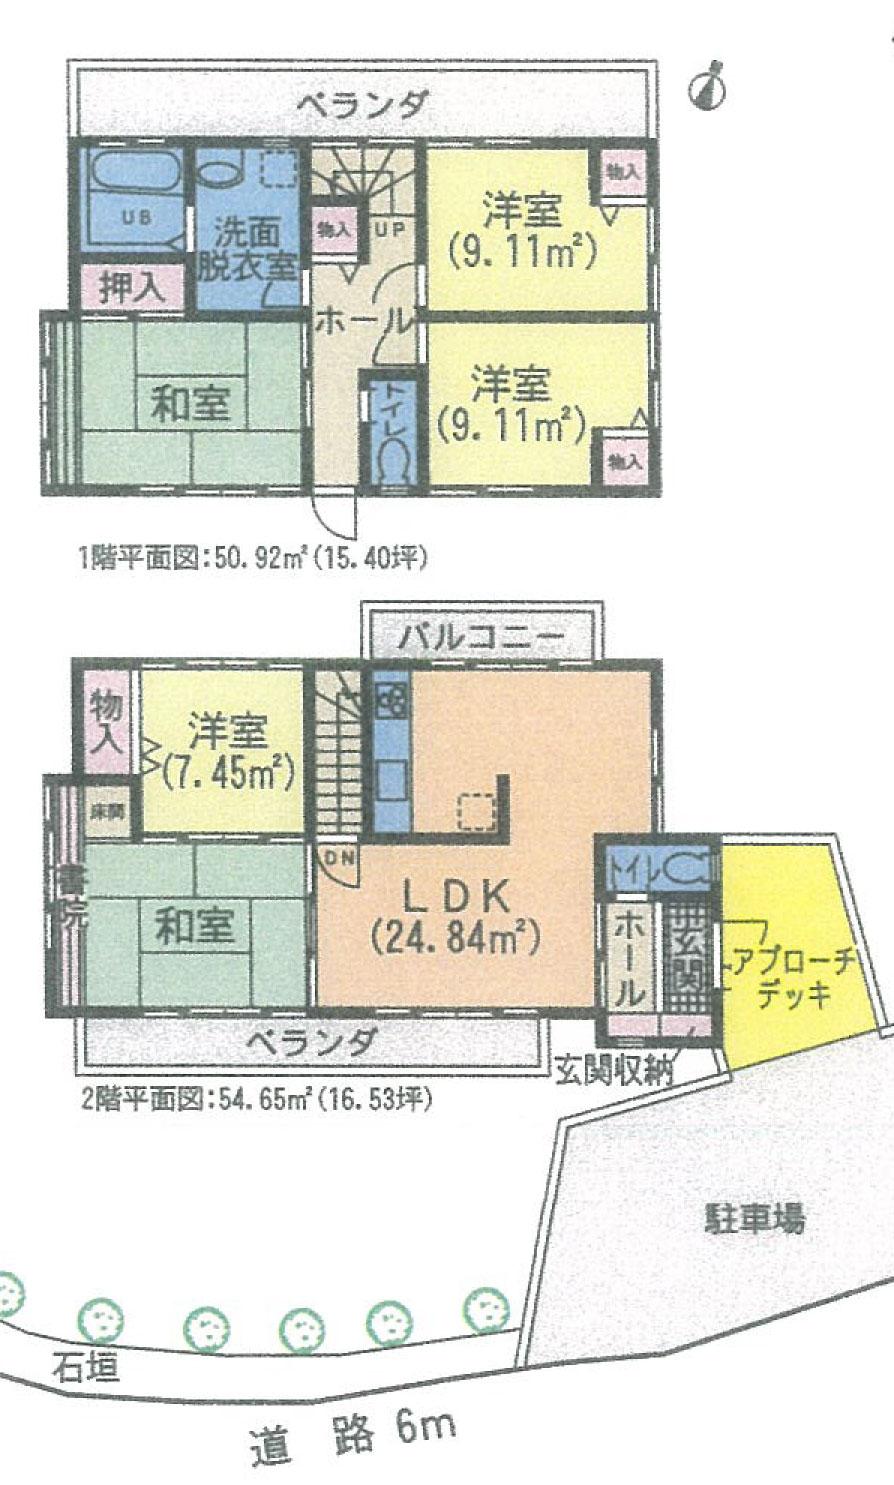 Floor plan. 28.5 million yen, 5LDK + S (storeroom), Land area 358.03 sq m , Building area 105.57 sq m 4LDK + S or 5LDK + S